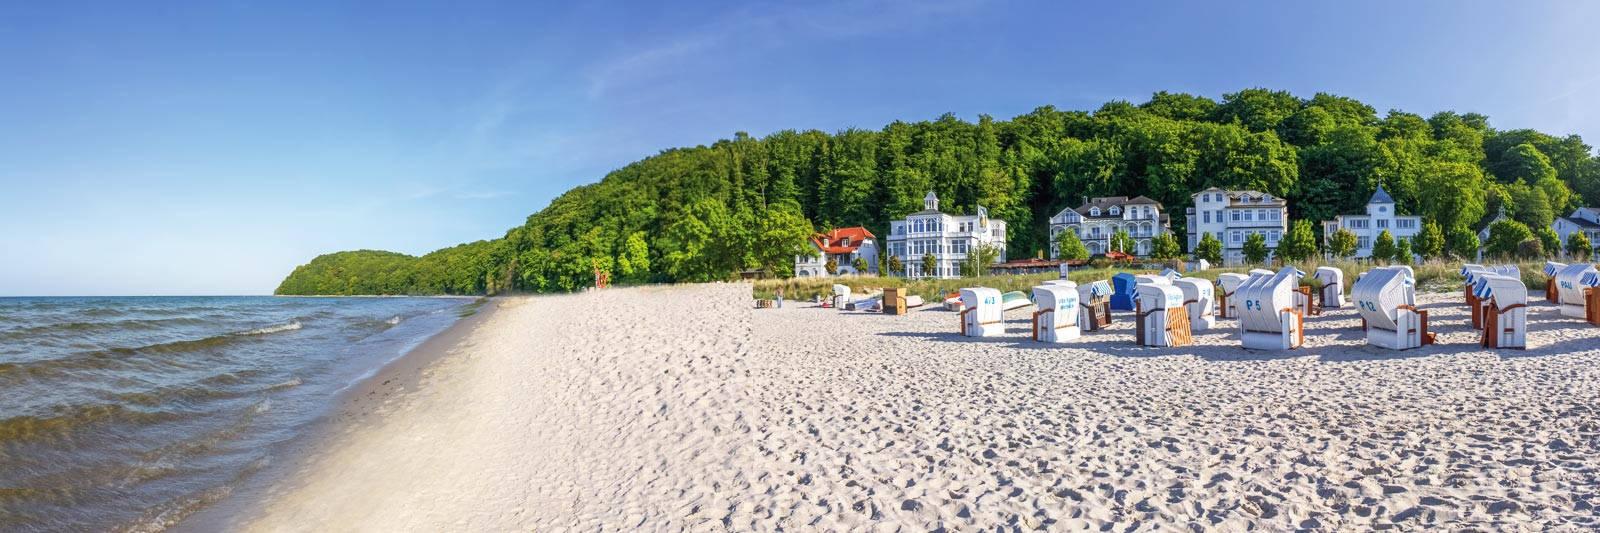 1.214 Ferienwohnungen und Ferienhäuser auf Poel - tourist-online.de